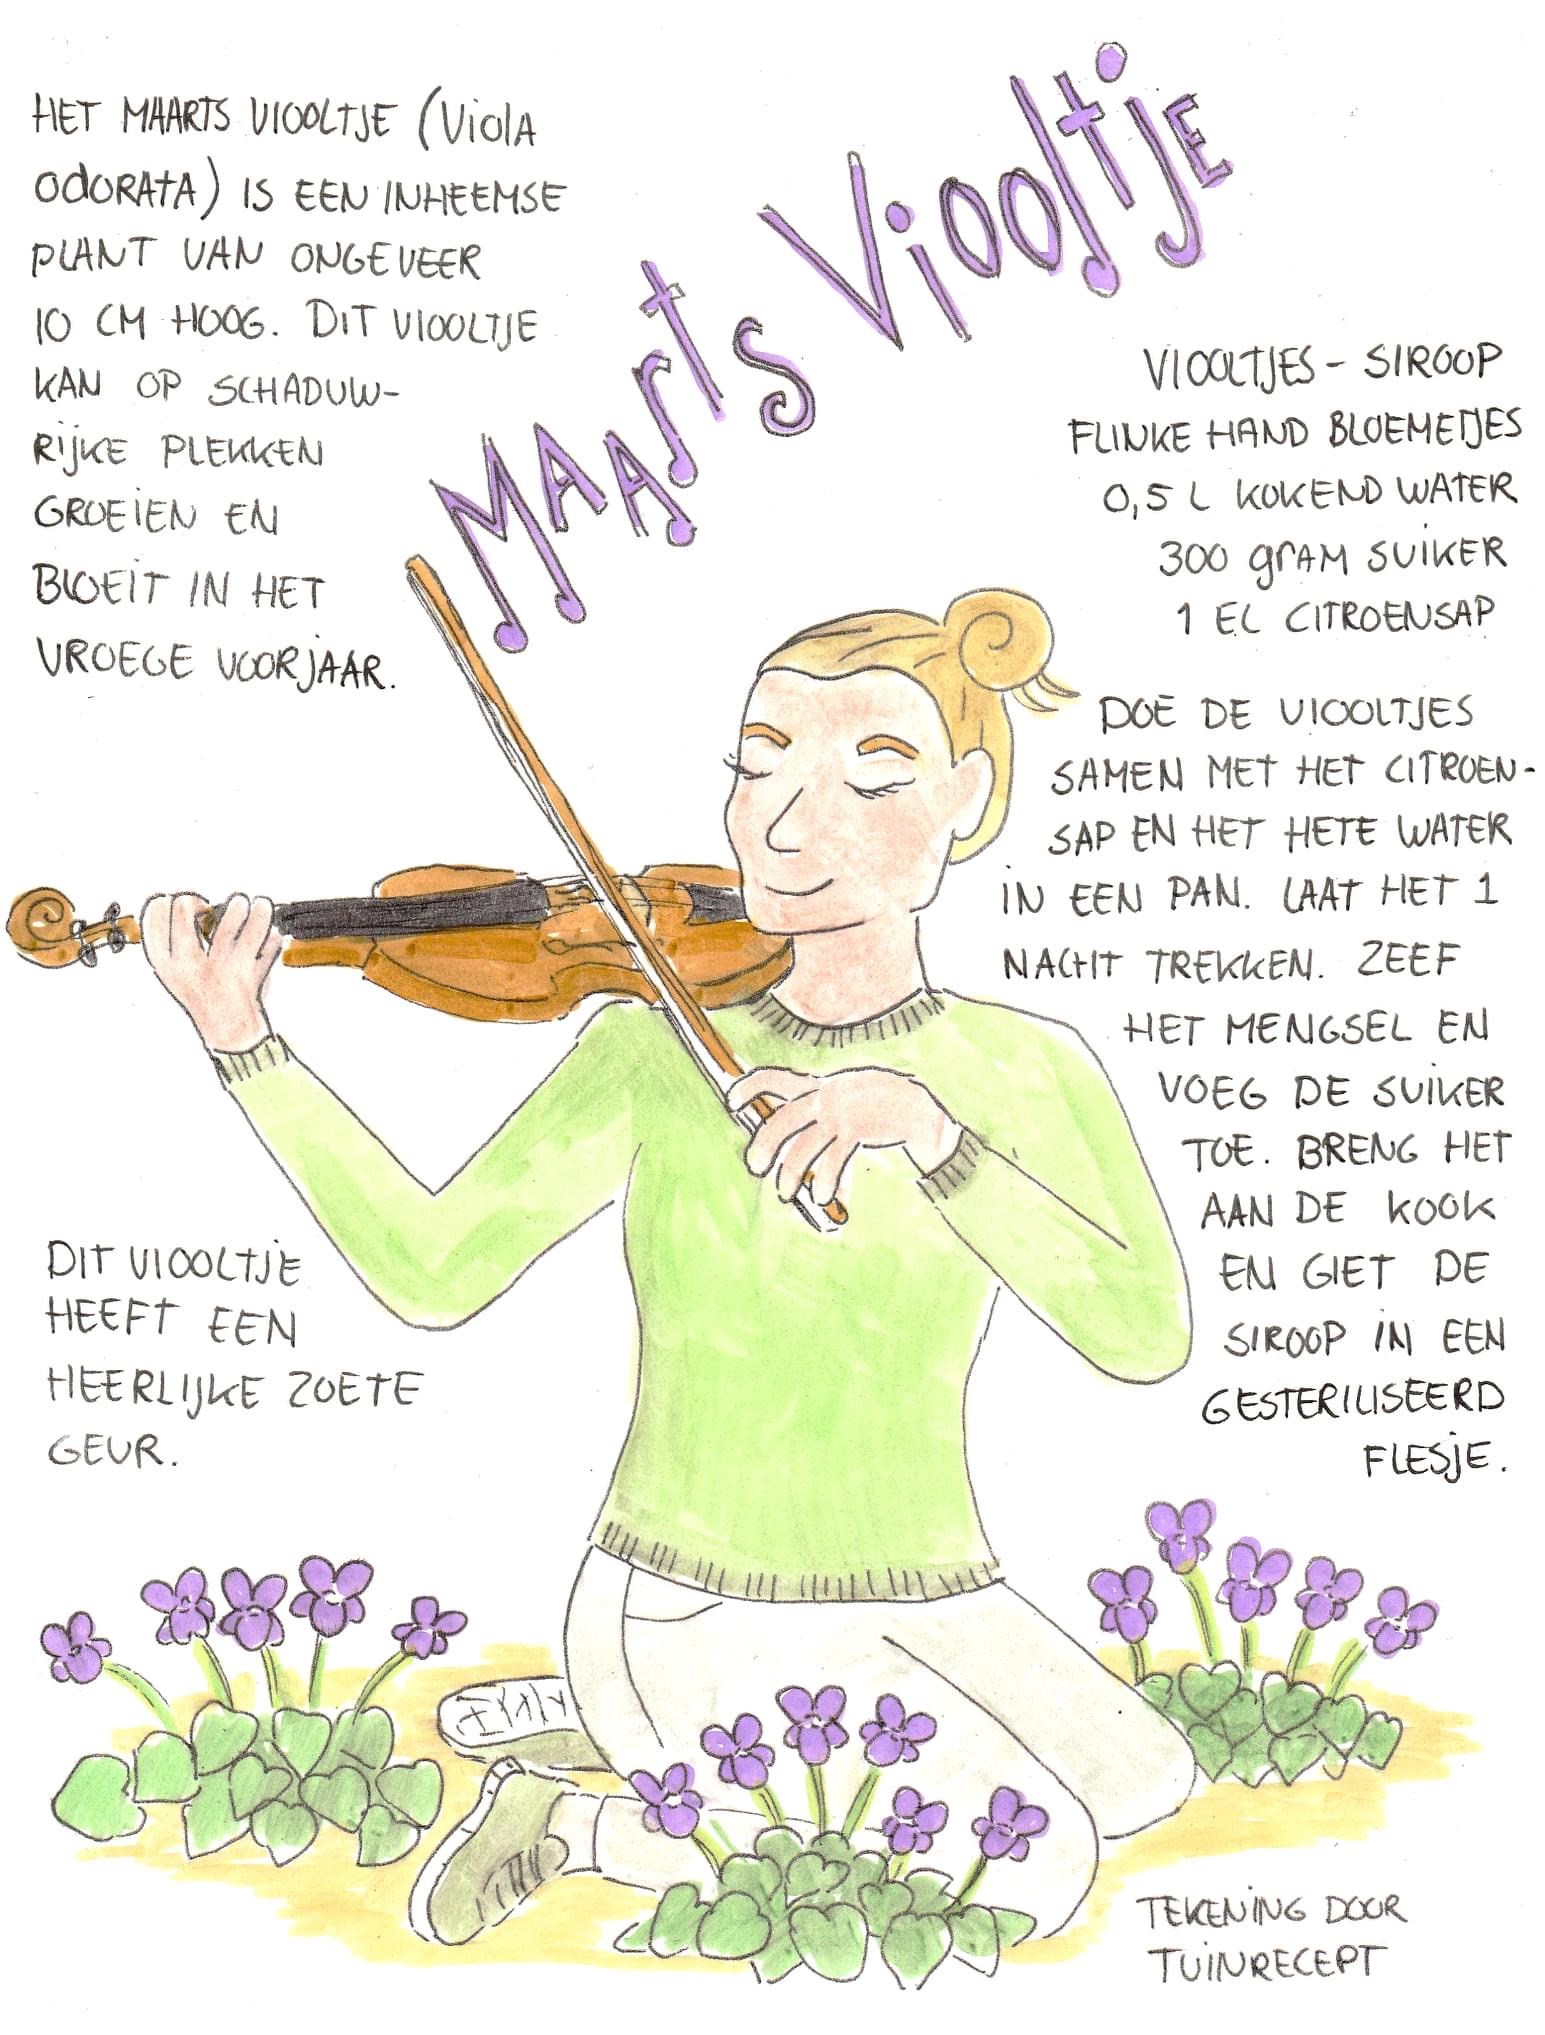 recept voor het gebruik van maarts viooltje